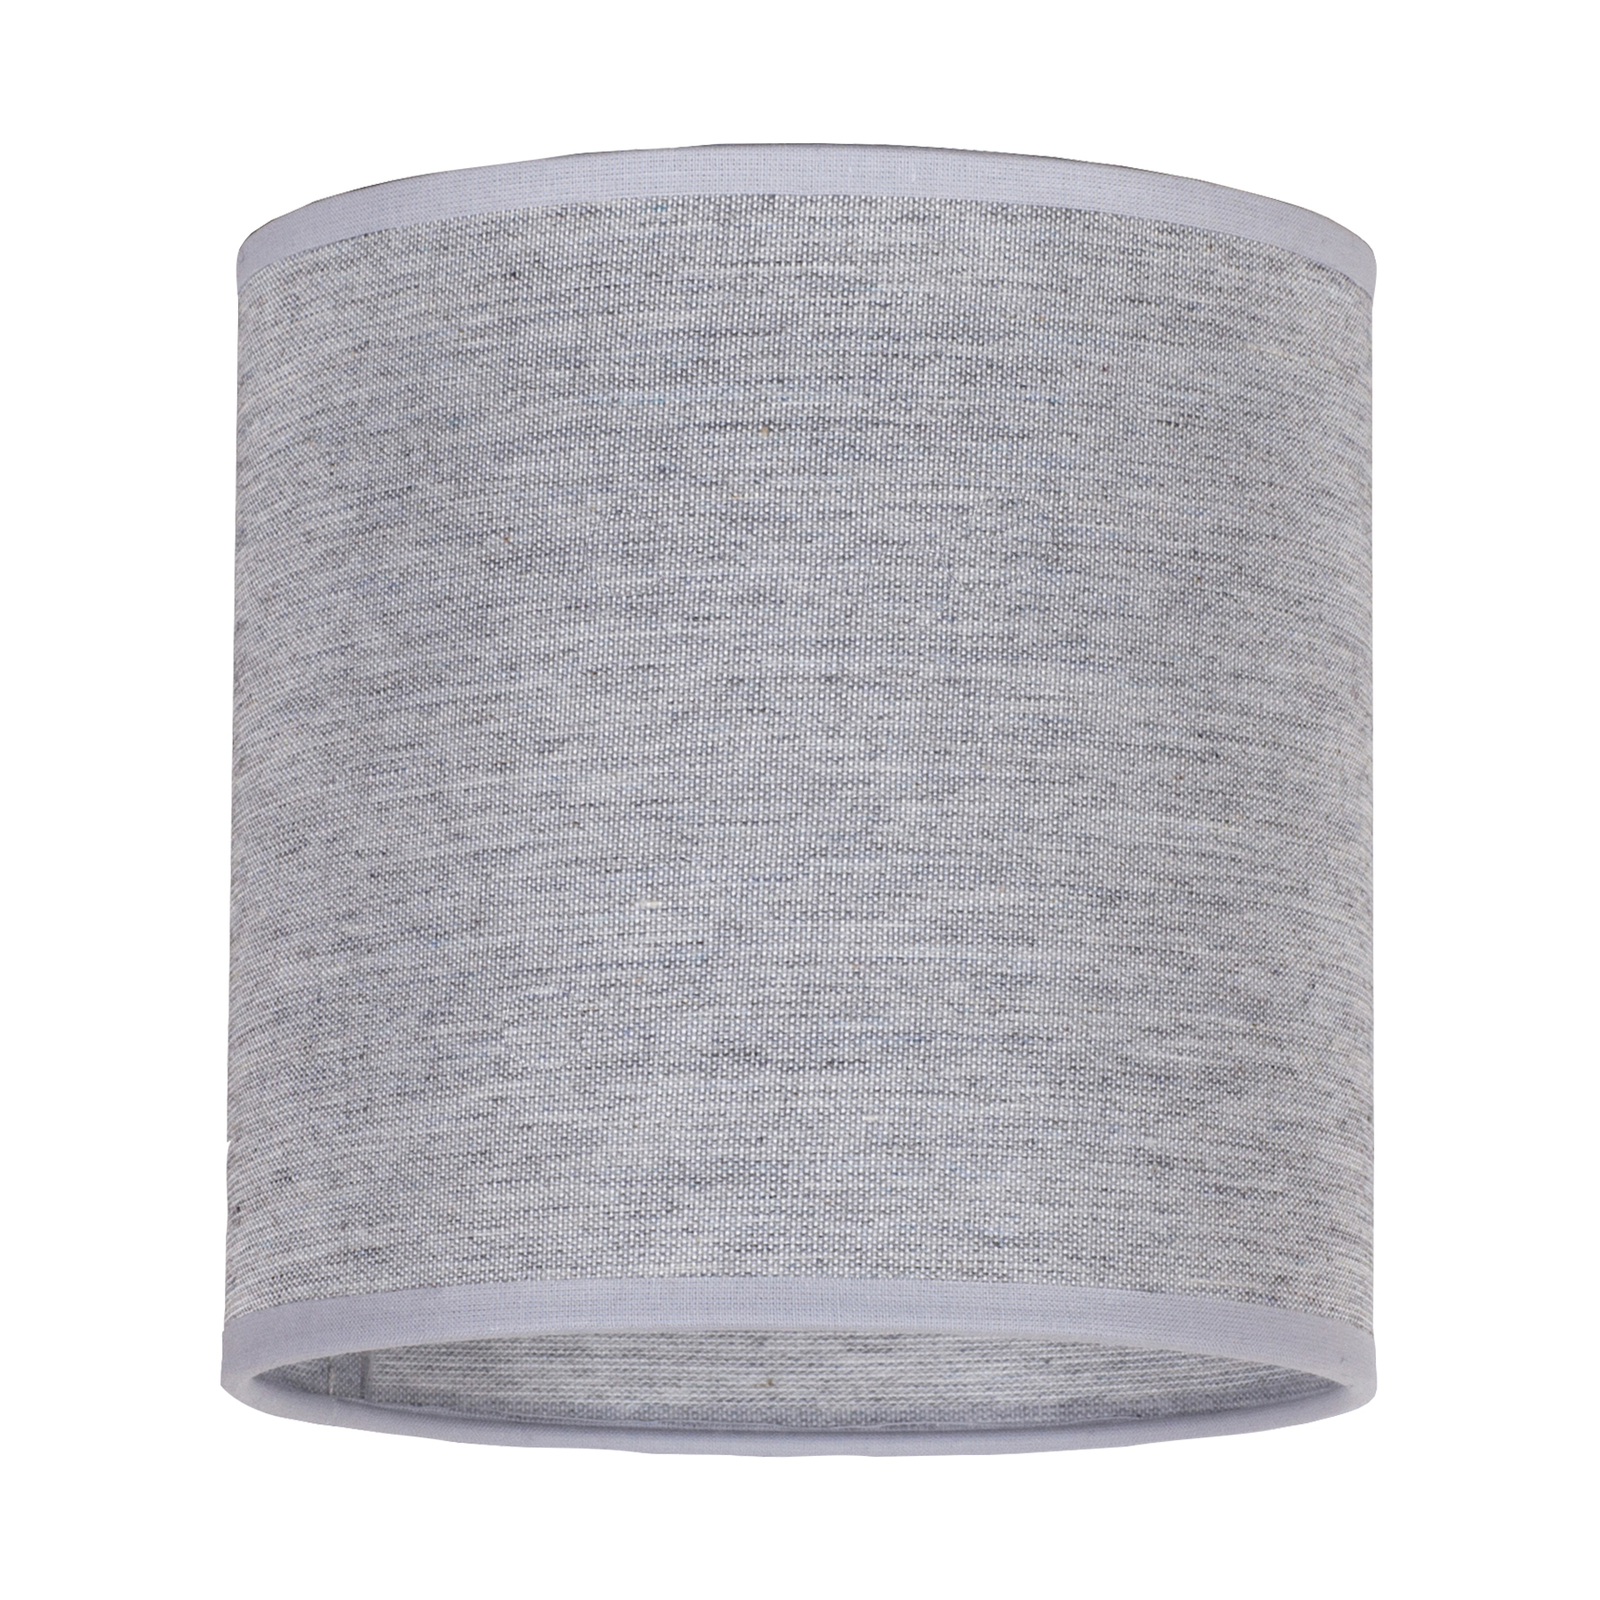 Lampeskjerm Roller, grå, Ø 15 cm, høyde 15 cm